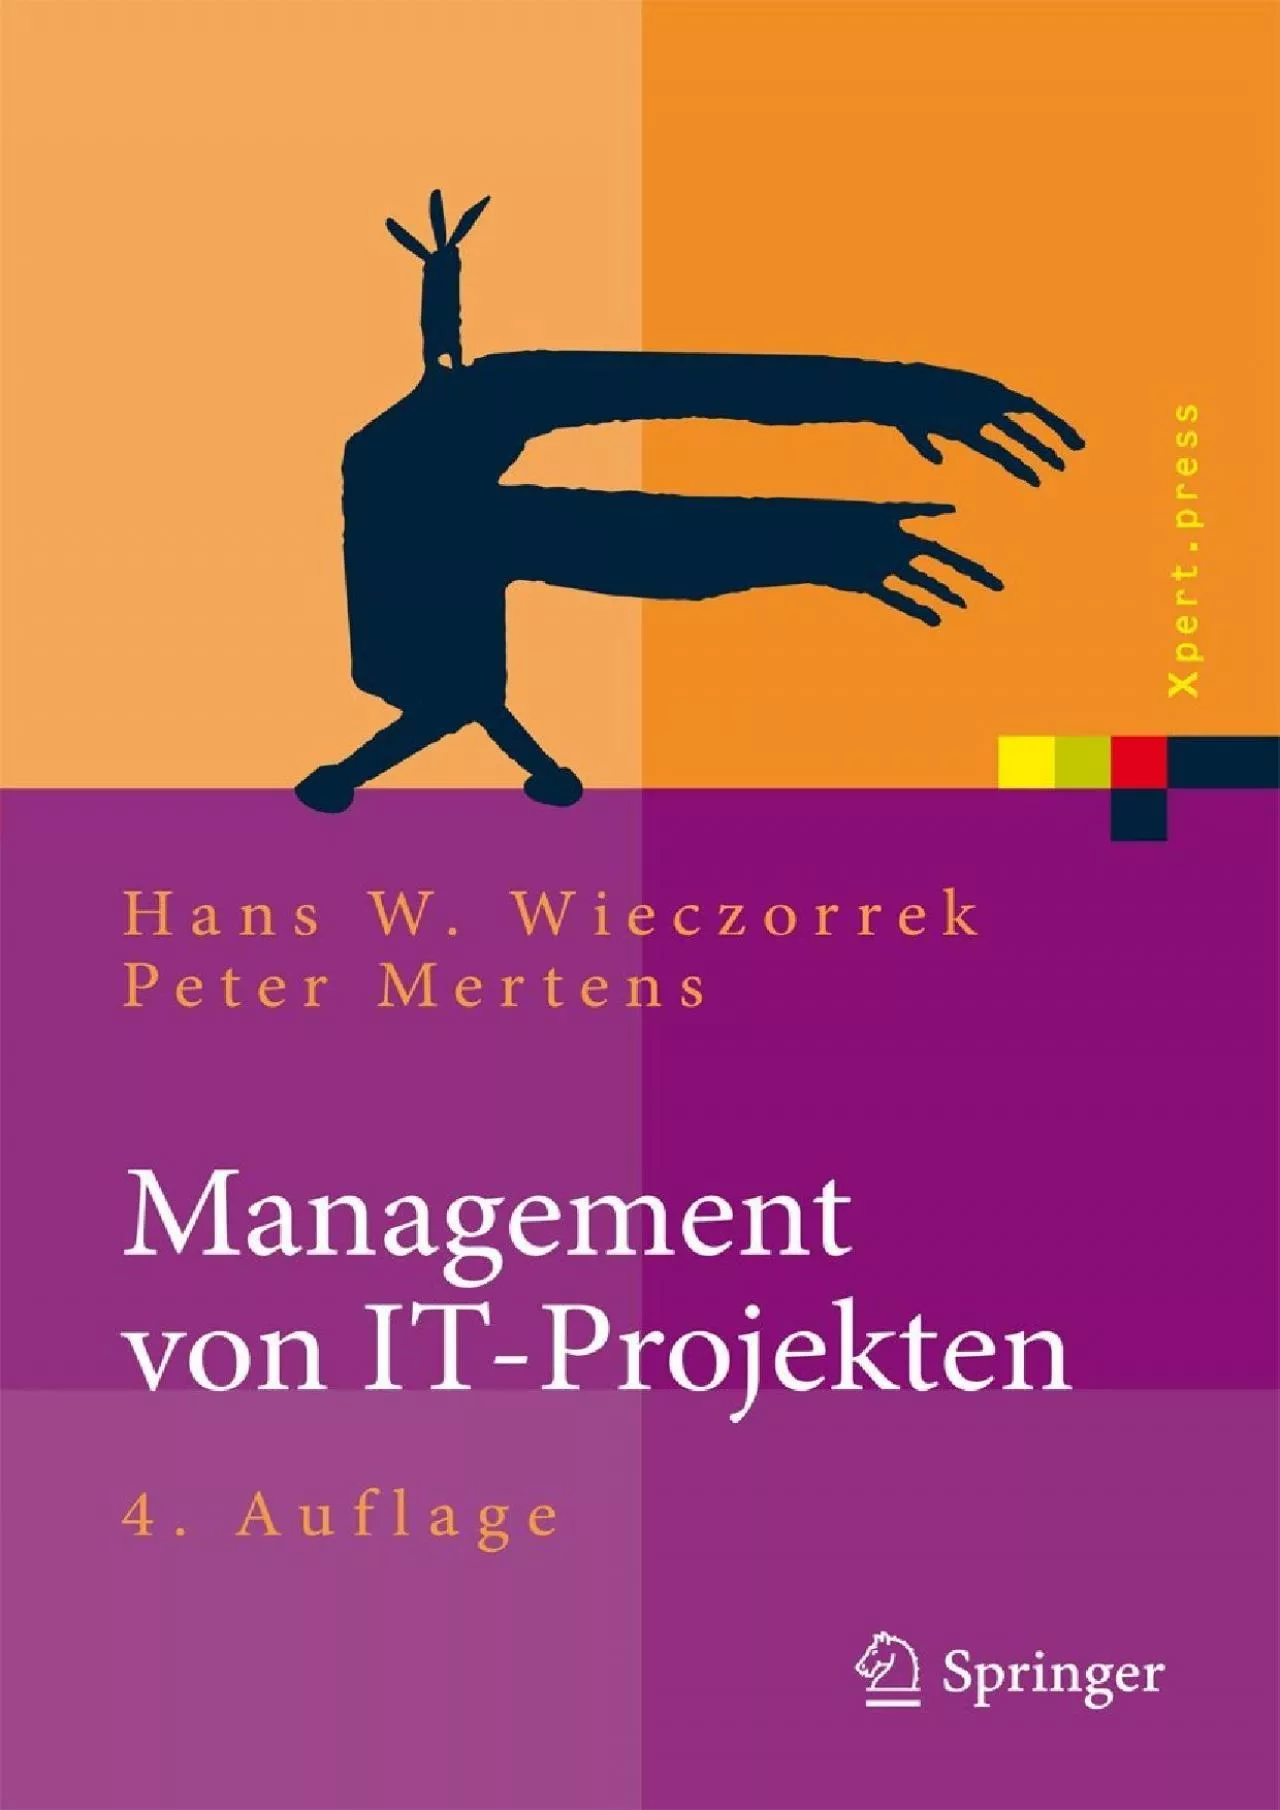 [BEST]-Management von IT-Projekten: Von der Planung zur Realisierung (Xpert.press) (German